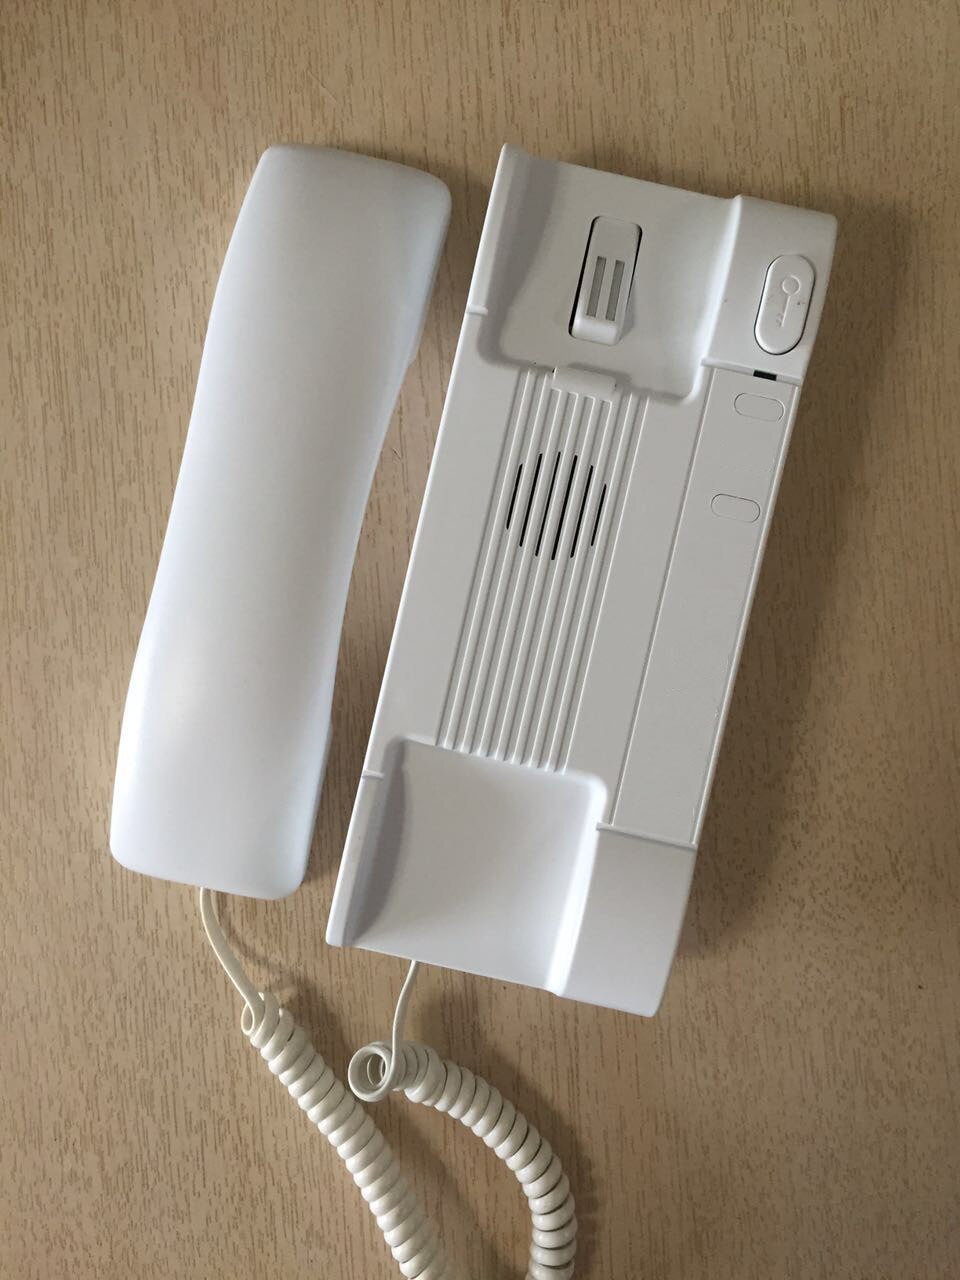 Zhudele Top Audio Intercom Systeem Home Security Audio Deurtelefoon Kits 008A Indoor Unit Voor Building